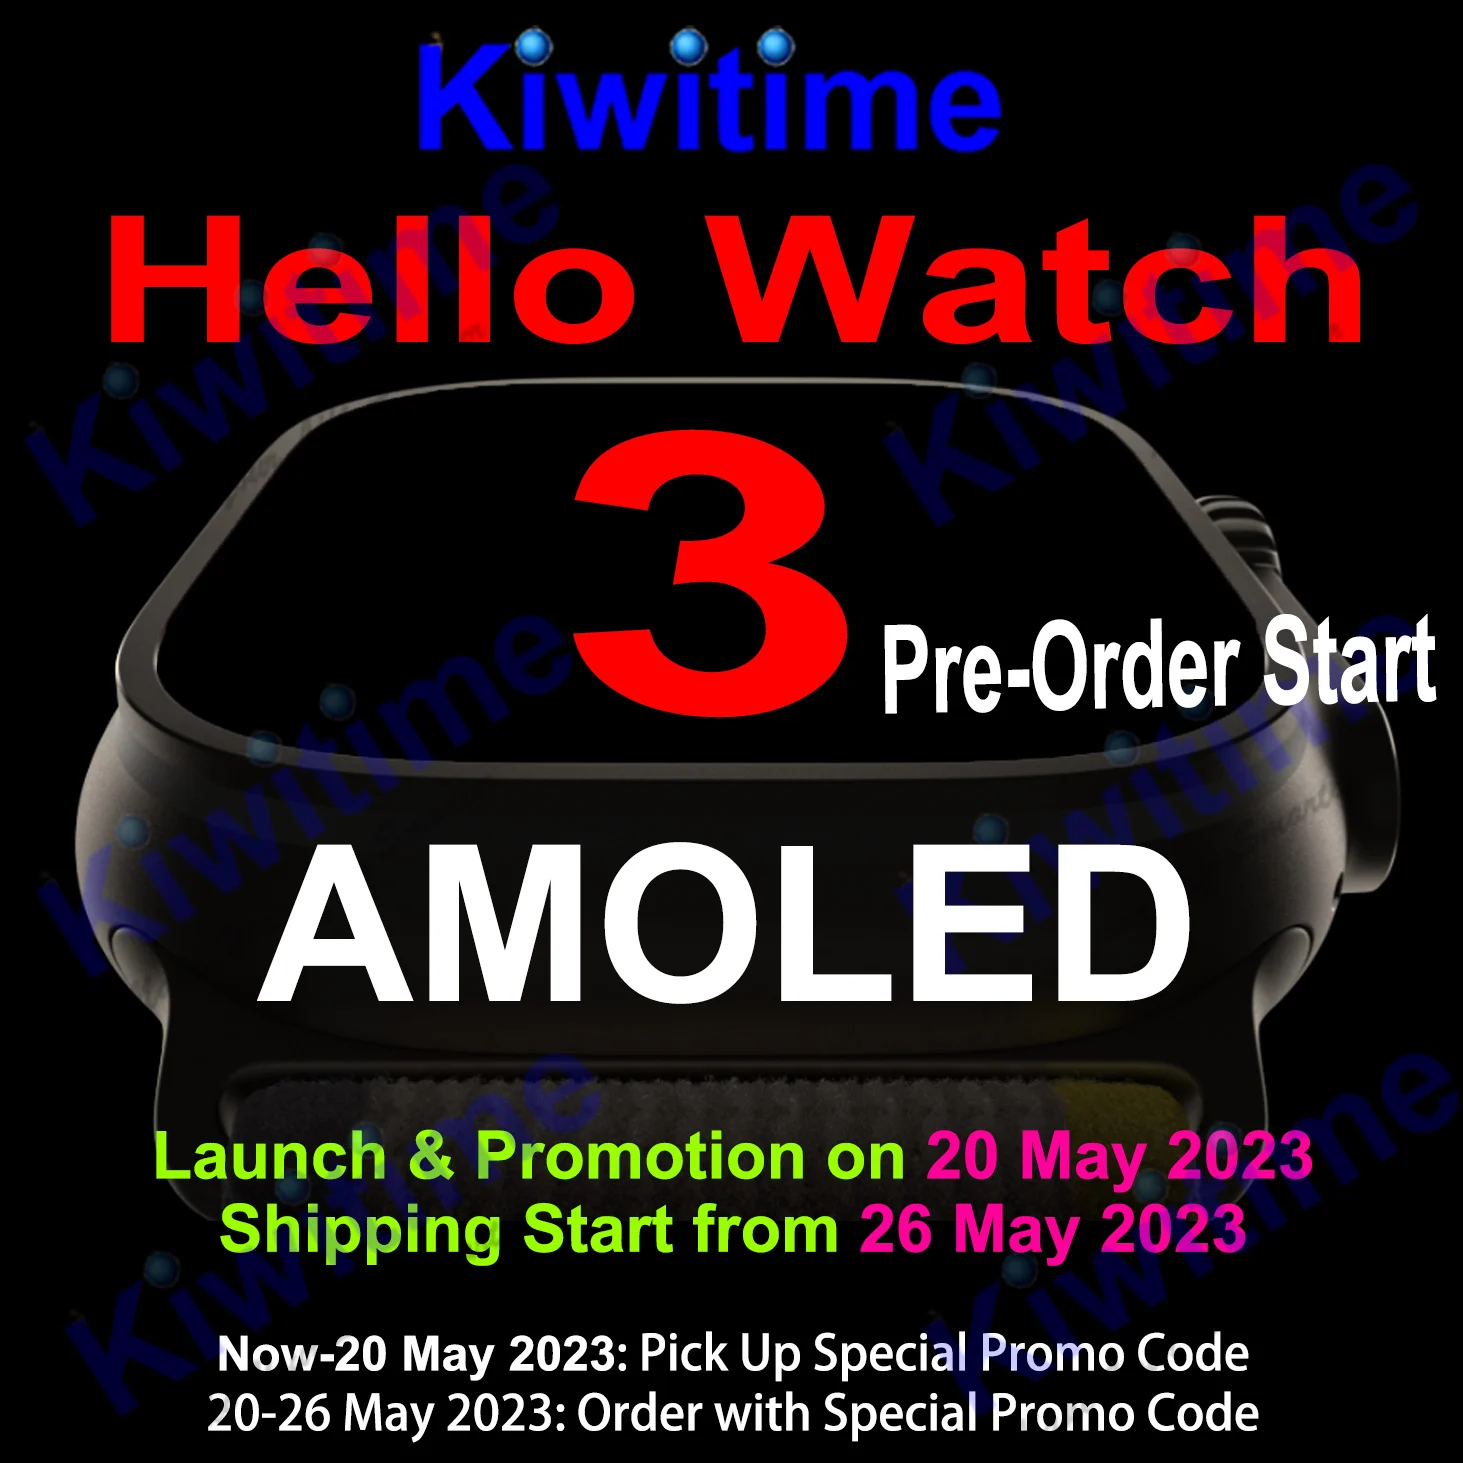 KIWITIME Hello Watch 3